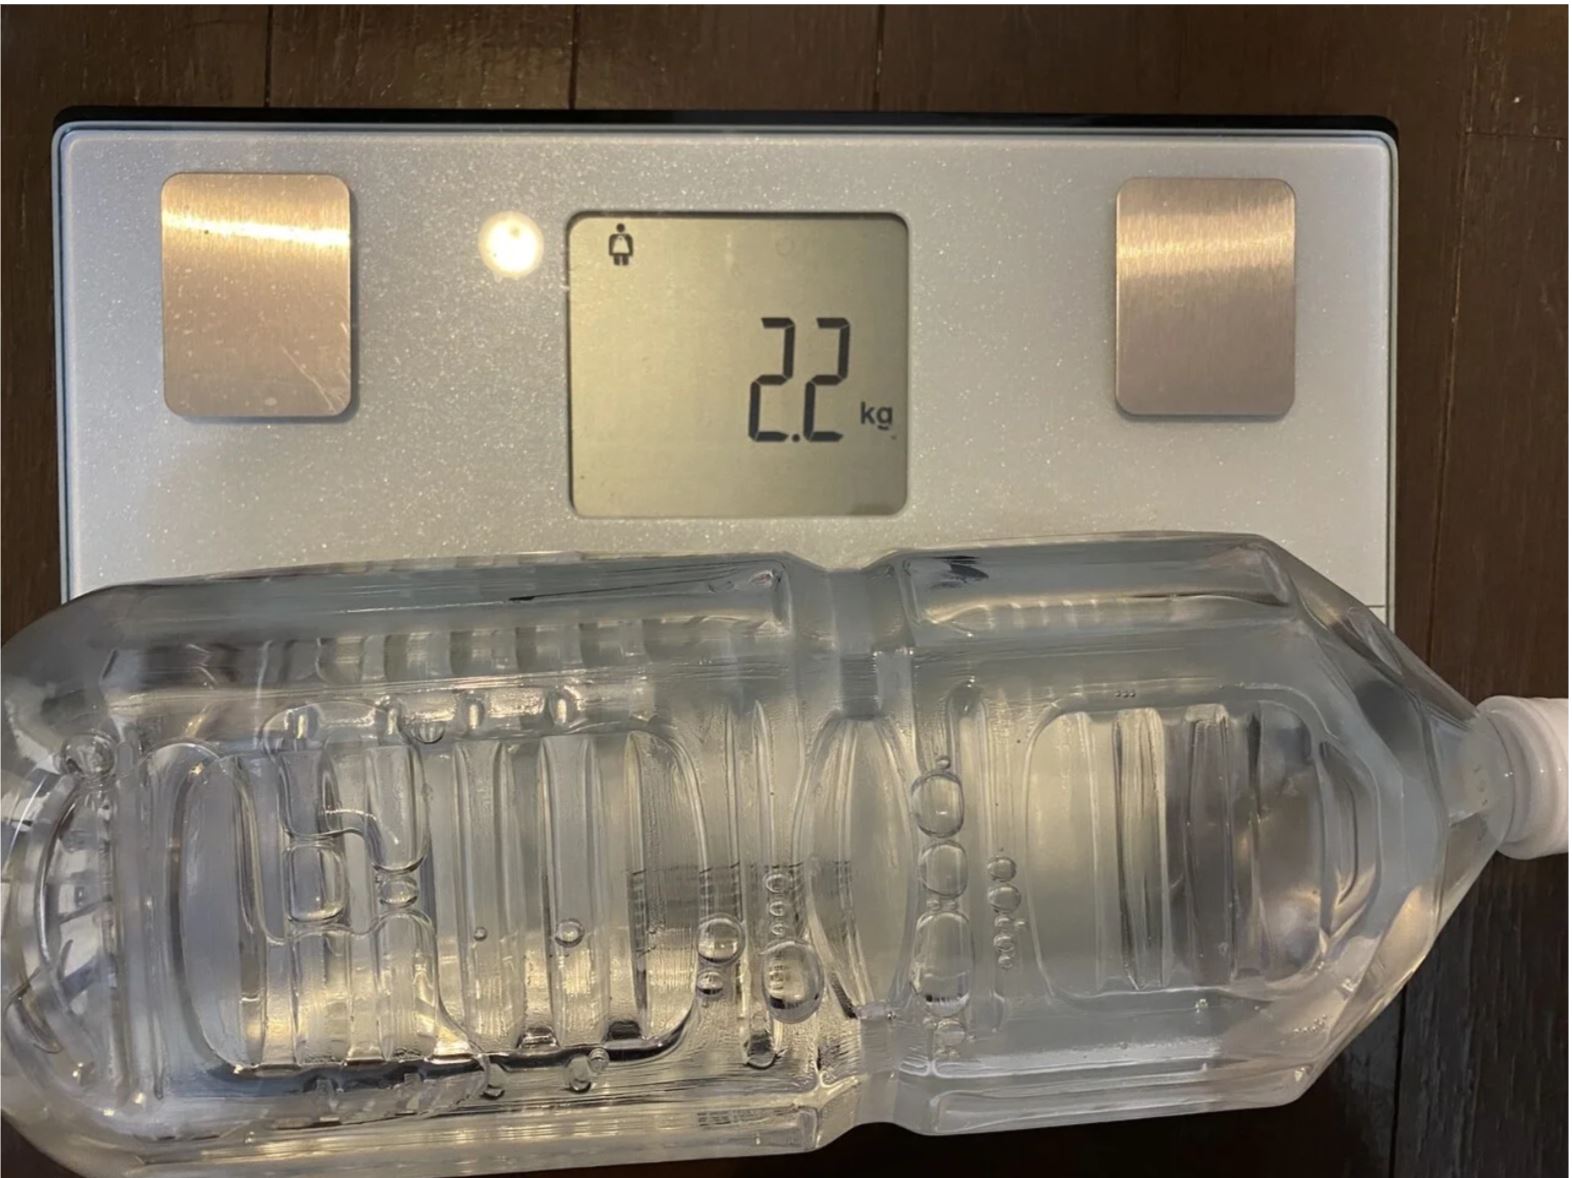 タニタのたいそせいけいにのせてペットボトルの重さを測っている写真。２．２キログラムと表示されています